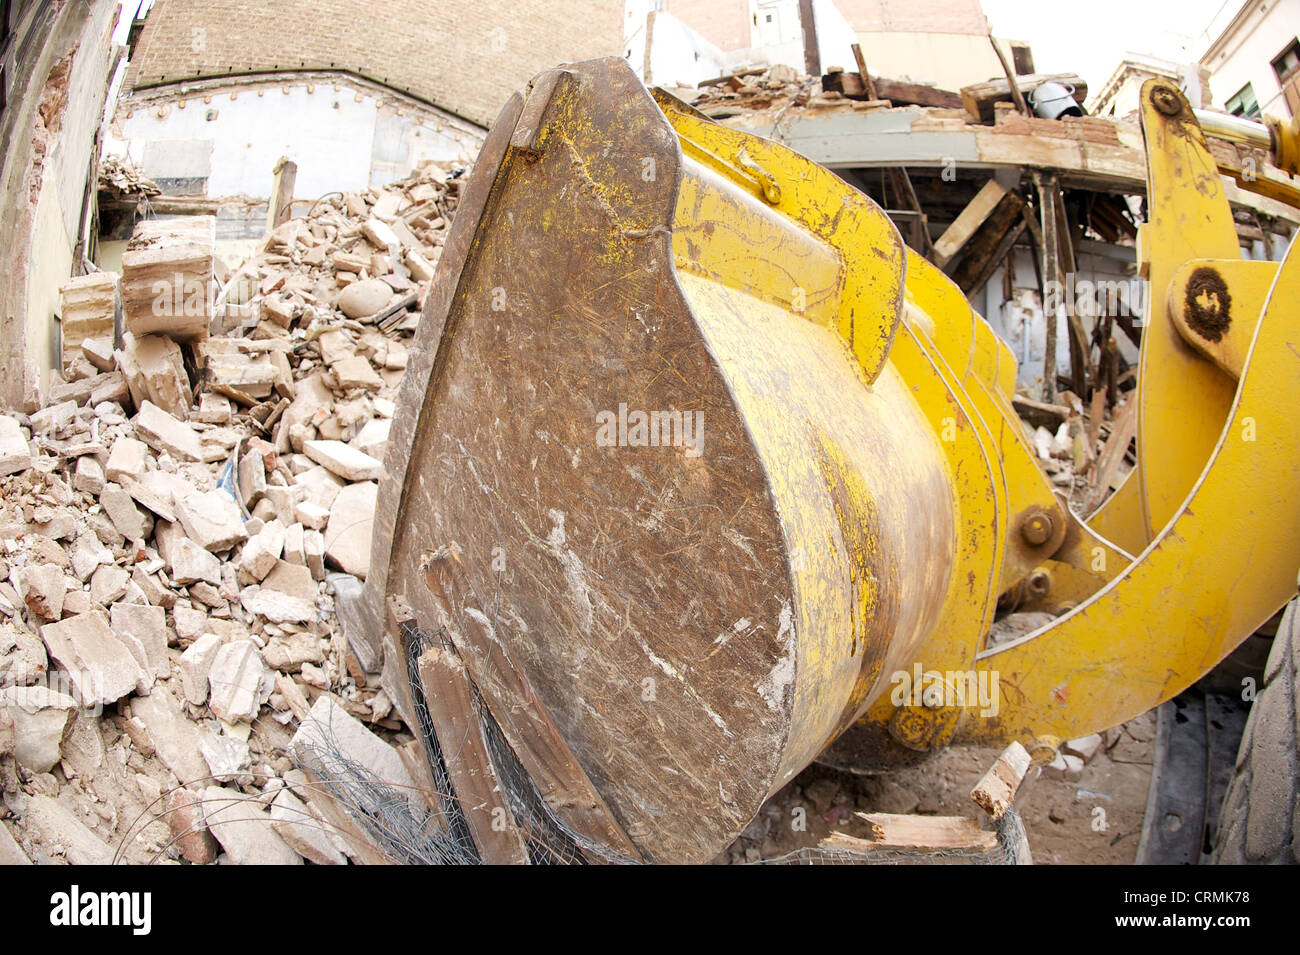 Vista laterale del giallo digger la demolizione di un edificio e deselezionando le macerie, illustrante il settore delle costruzioni in rovina, Spagna Foto Stock